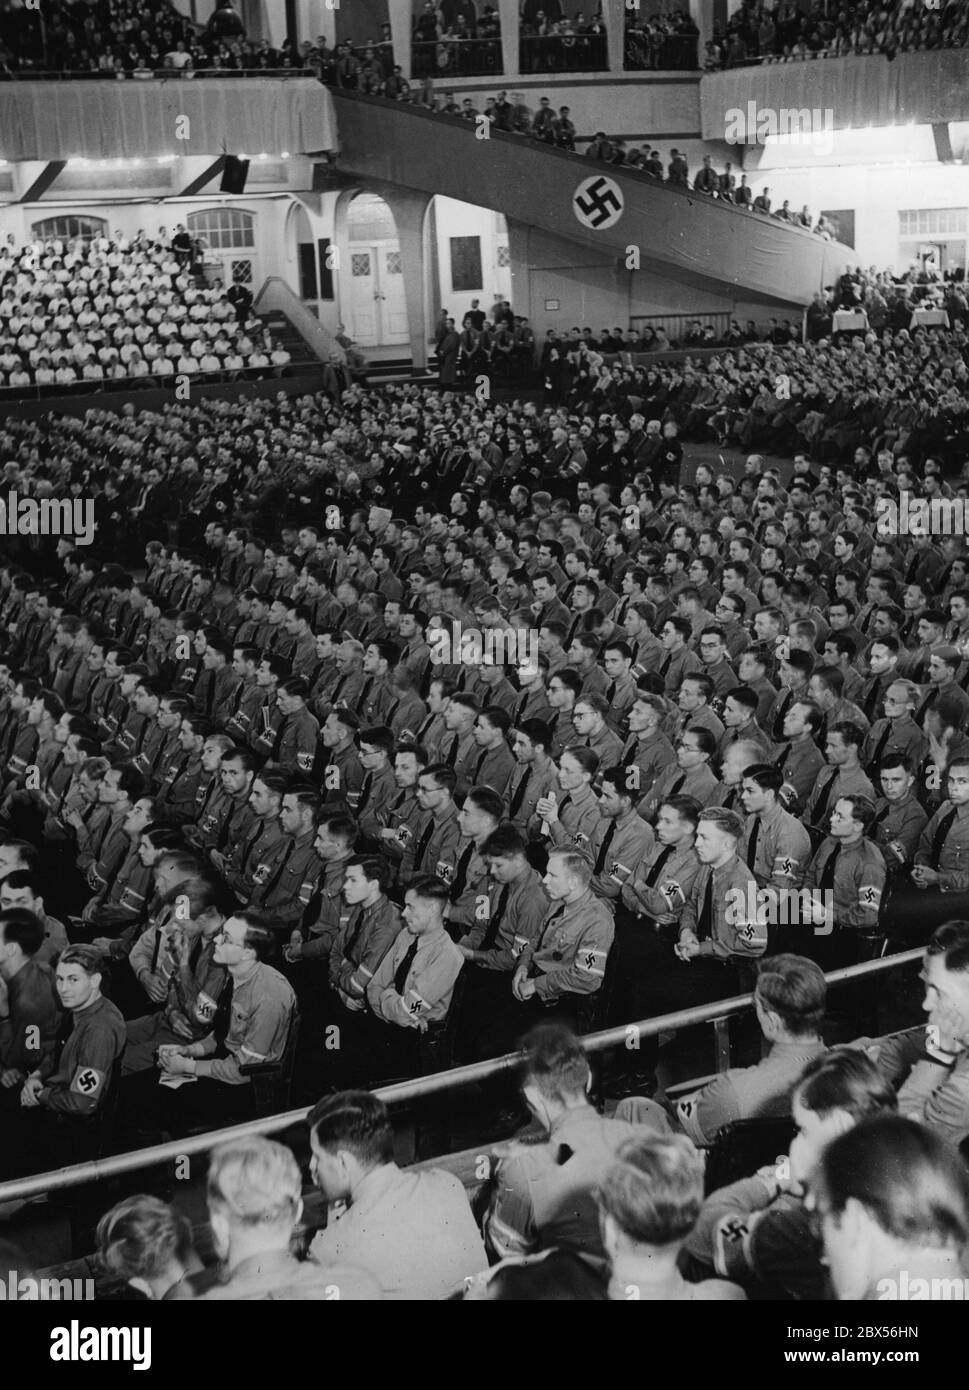 Vue d'un grand rassemblement au Berlin Sportpalast lors du discours de Joseph Goebbels à la fin de la journée des étudiants de Berlin. Banque D'Images